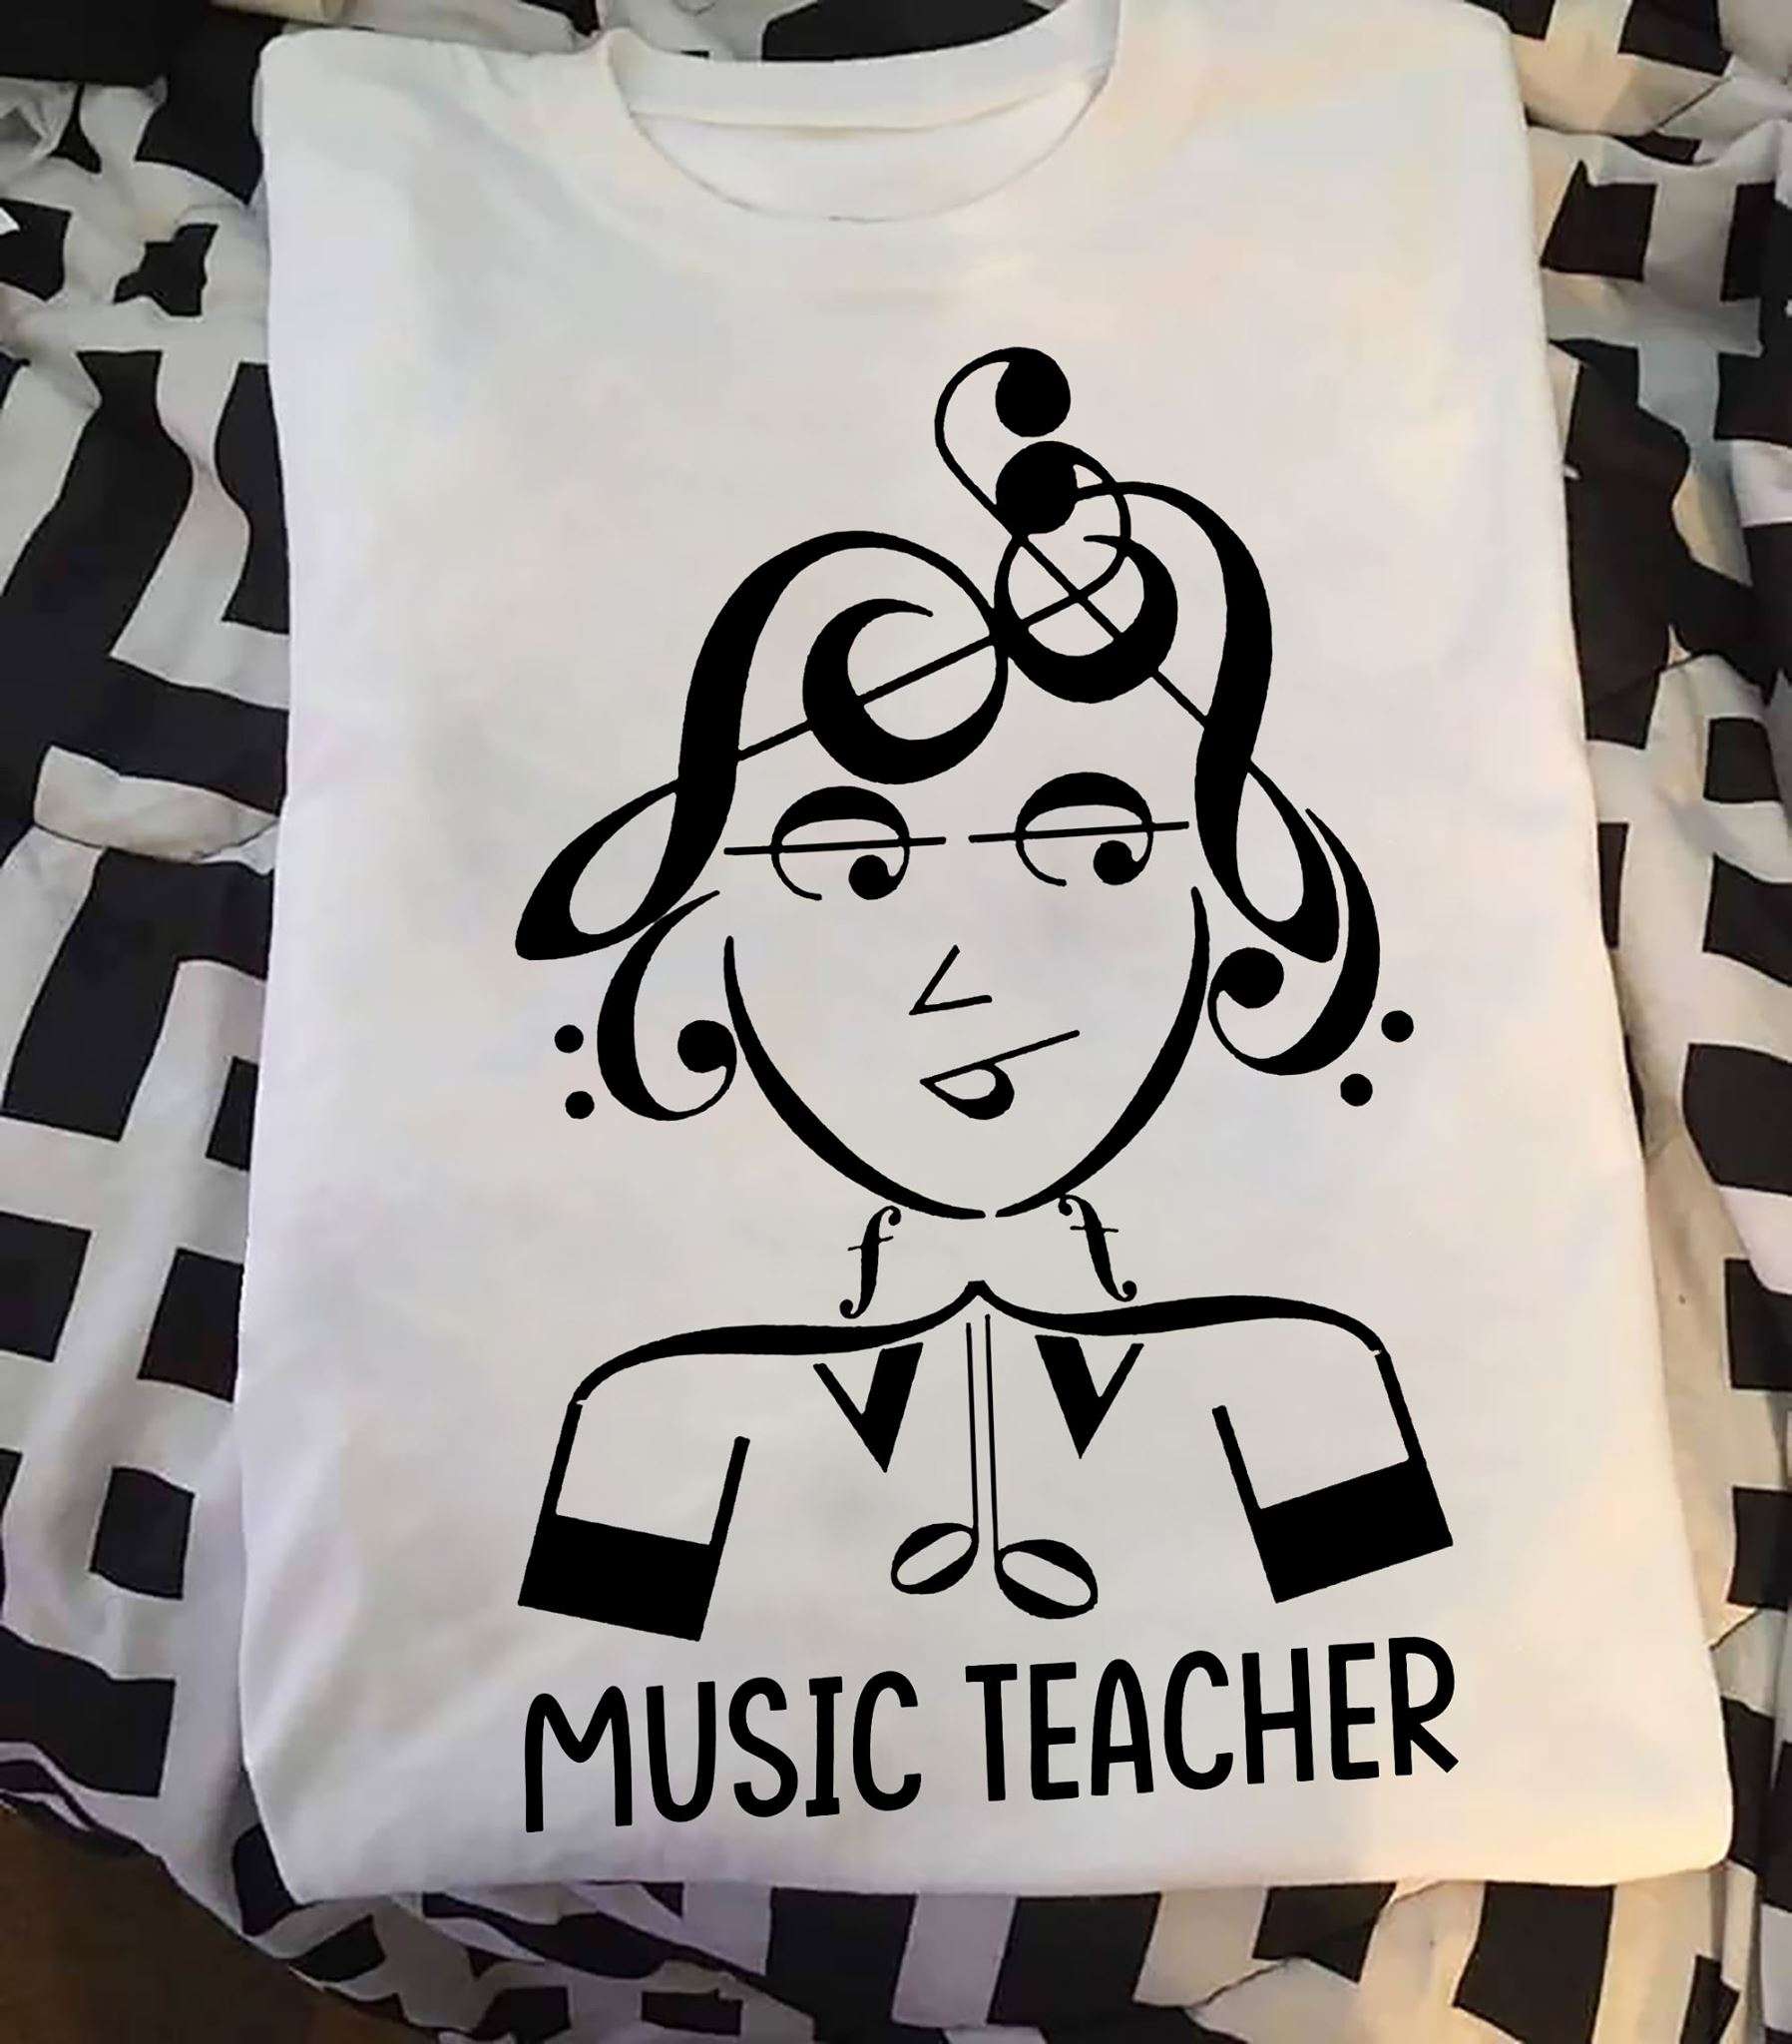 Music teacher - Teaching music for children, music educational job